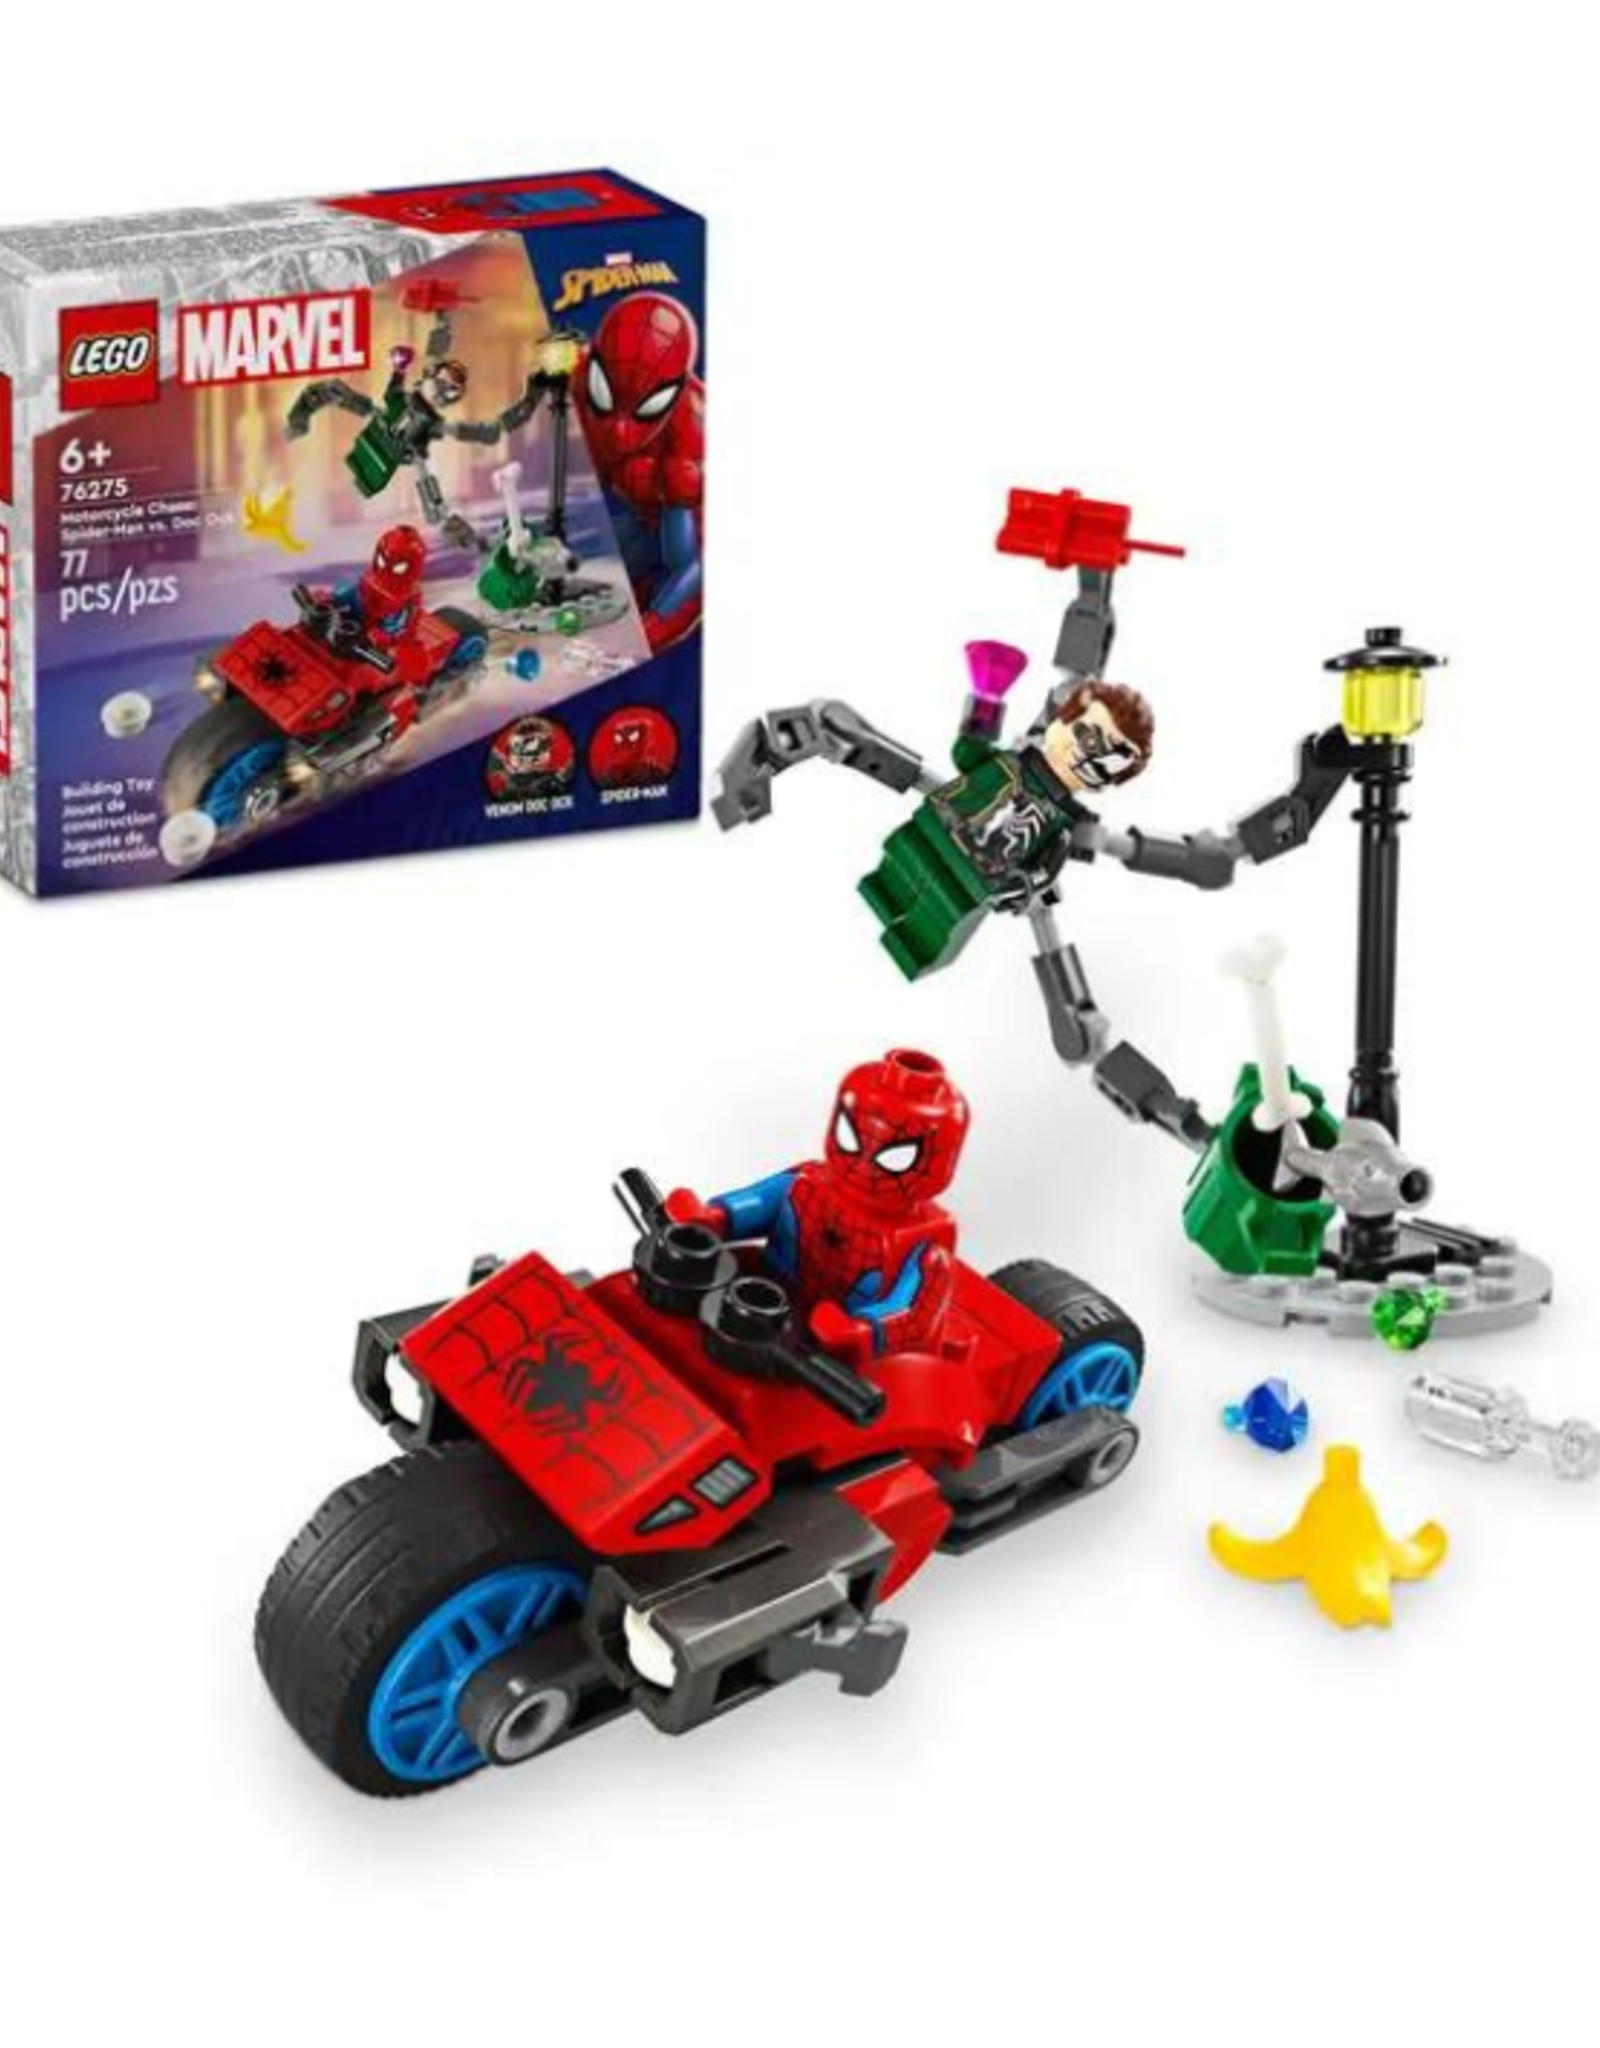 Lego Lego - Marvel Spiderman - 76275 - Motorcycle Chase: Spider-Man vs. Doc Ock